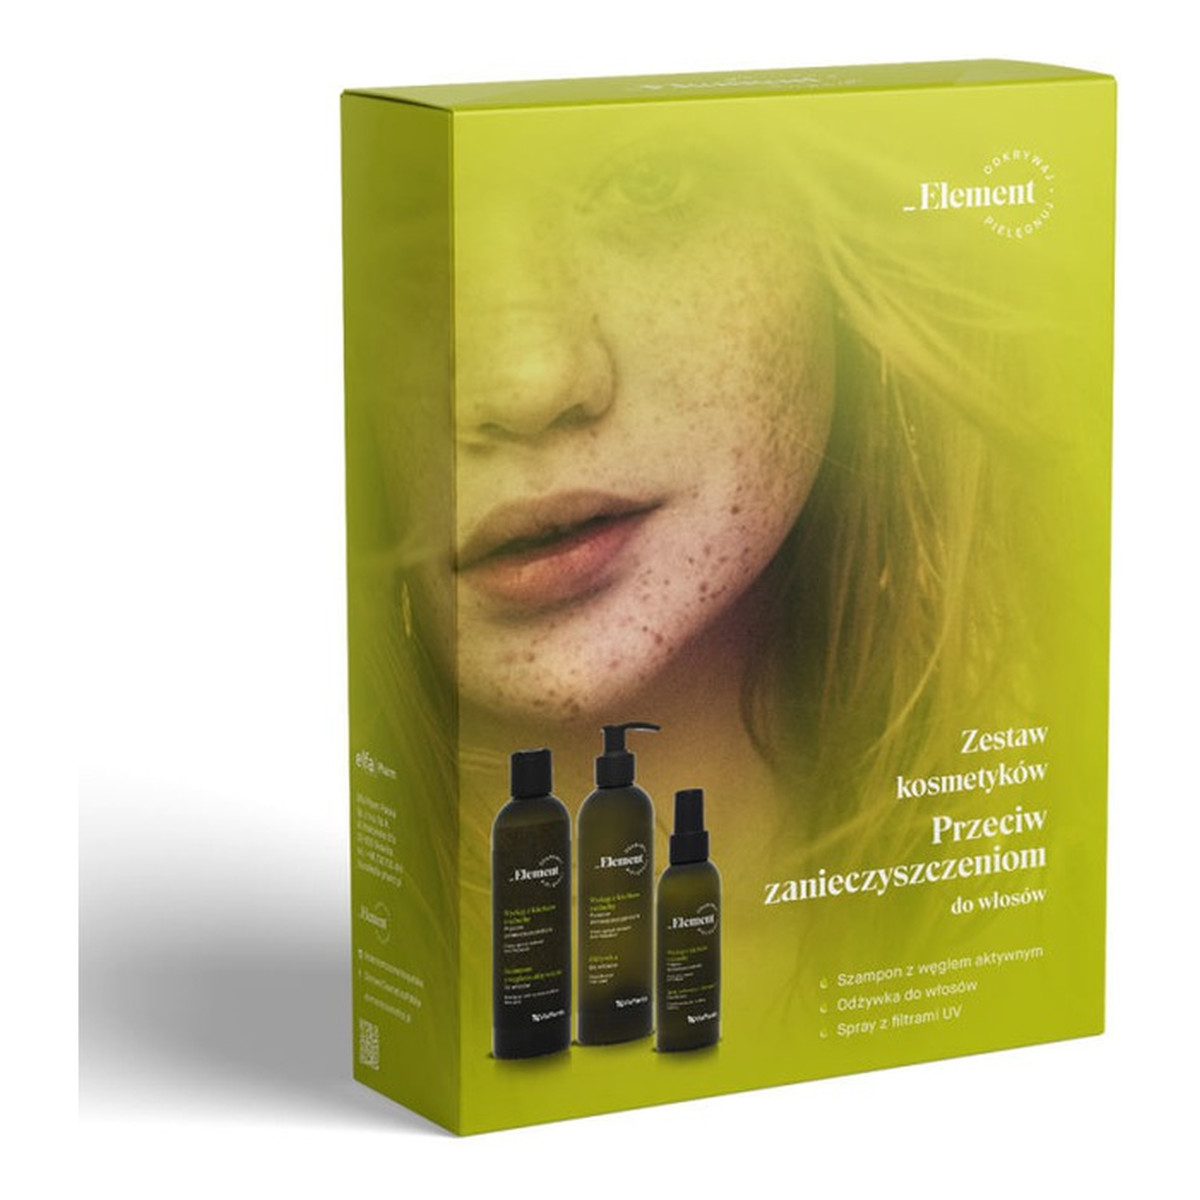 Vis Plantis ELEMENT zestaw kosmetyków przeciw zanieczyszczeniom do włosów